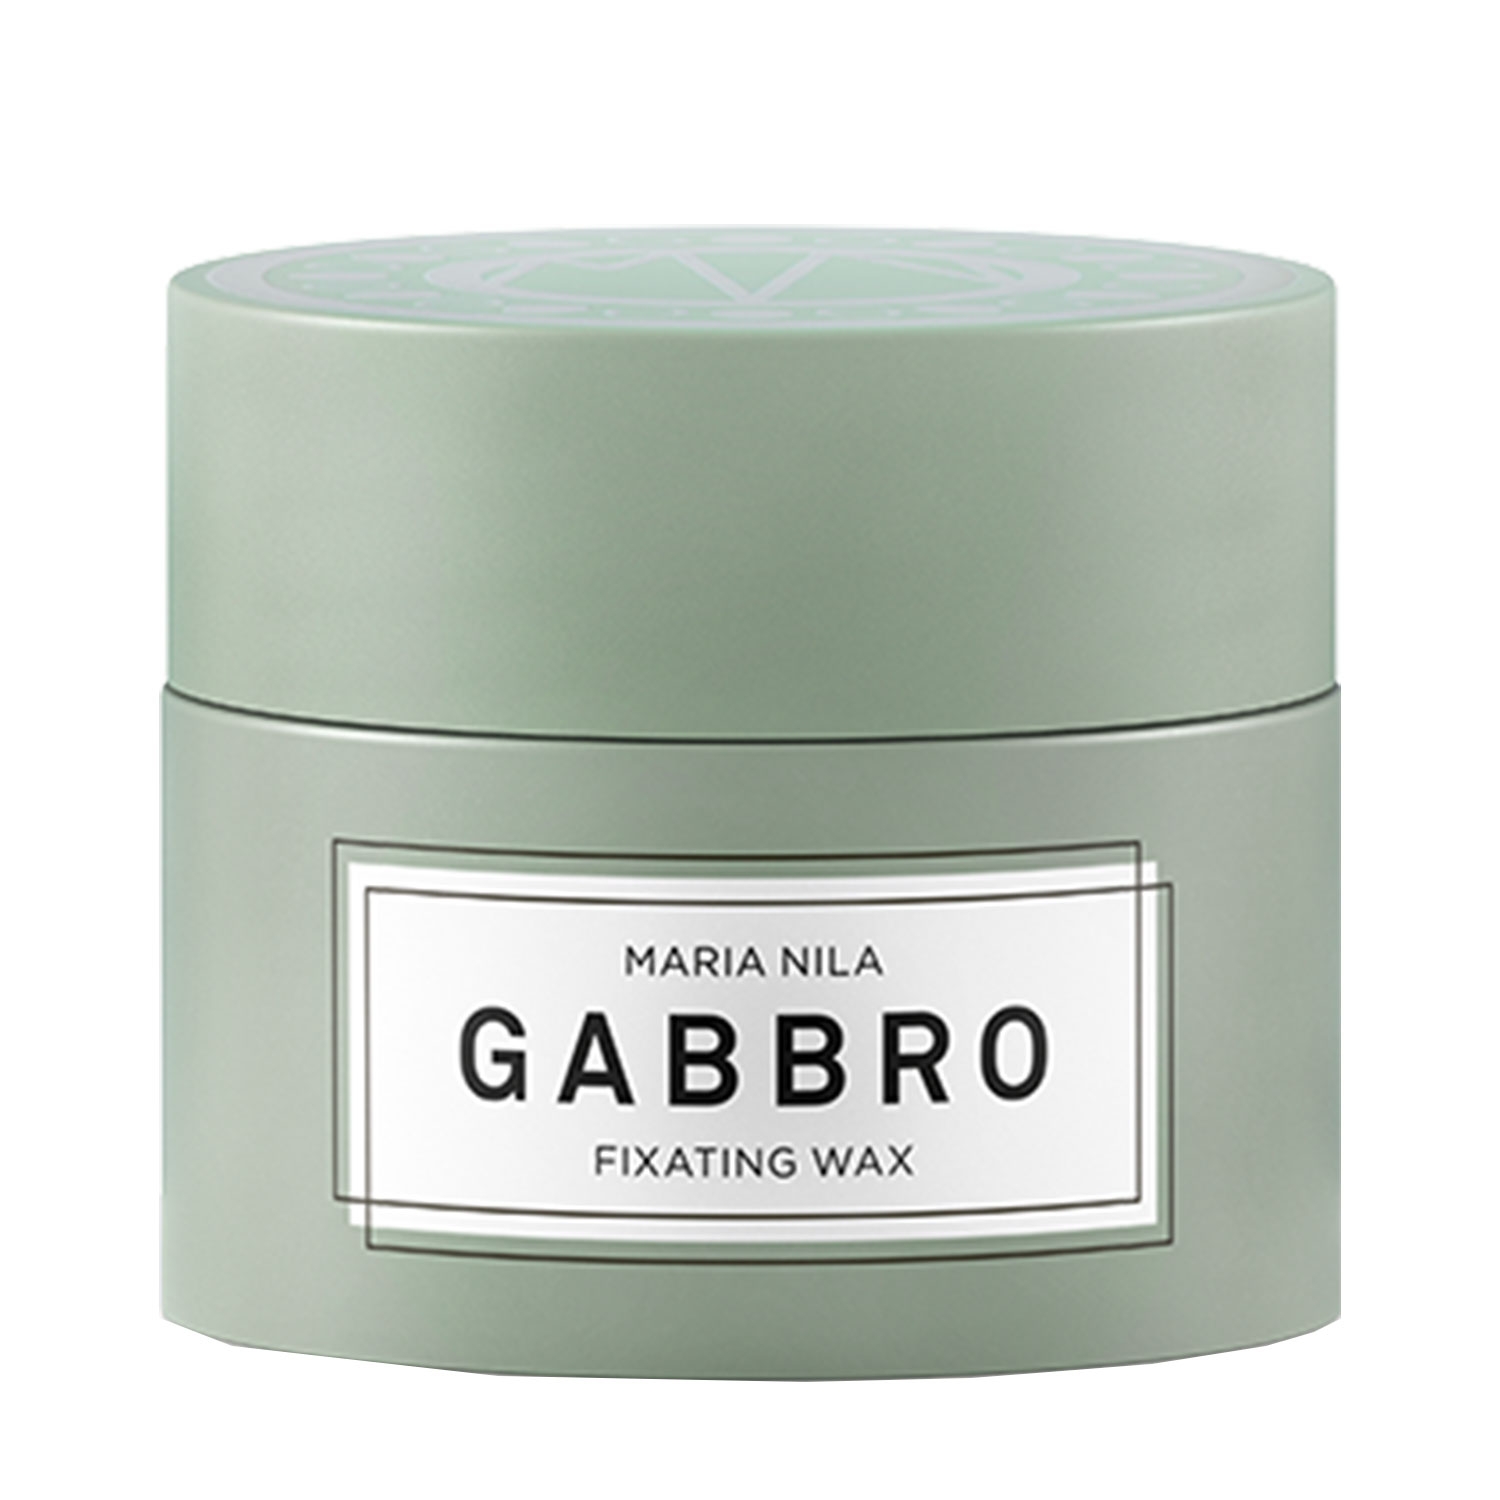 Produktbild von Minerals - Gabbro Fixating Wax